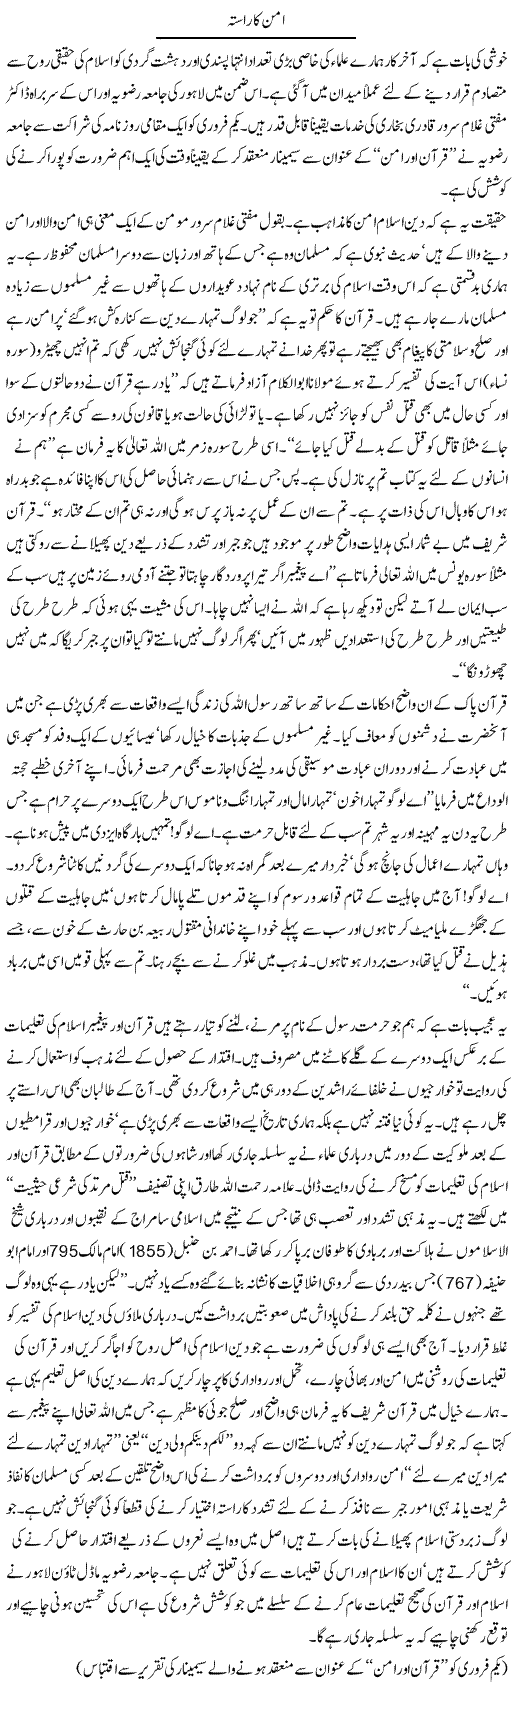 Aman ka rasta Express Column Hamid Akhtar 5 feb 2010